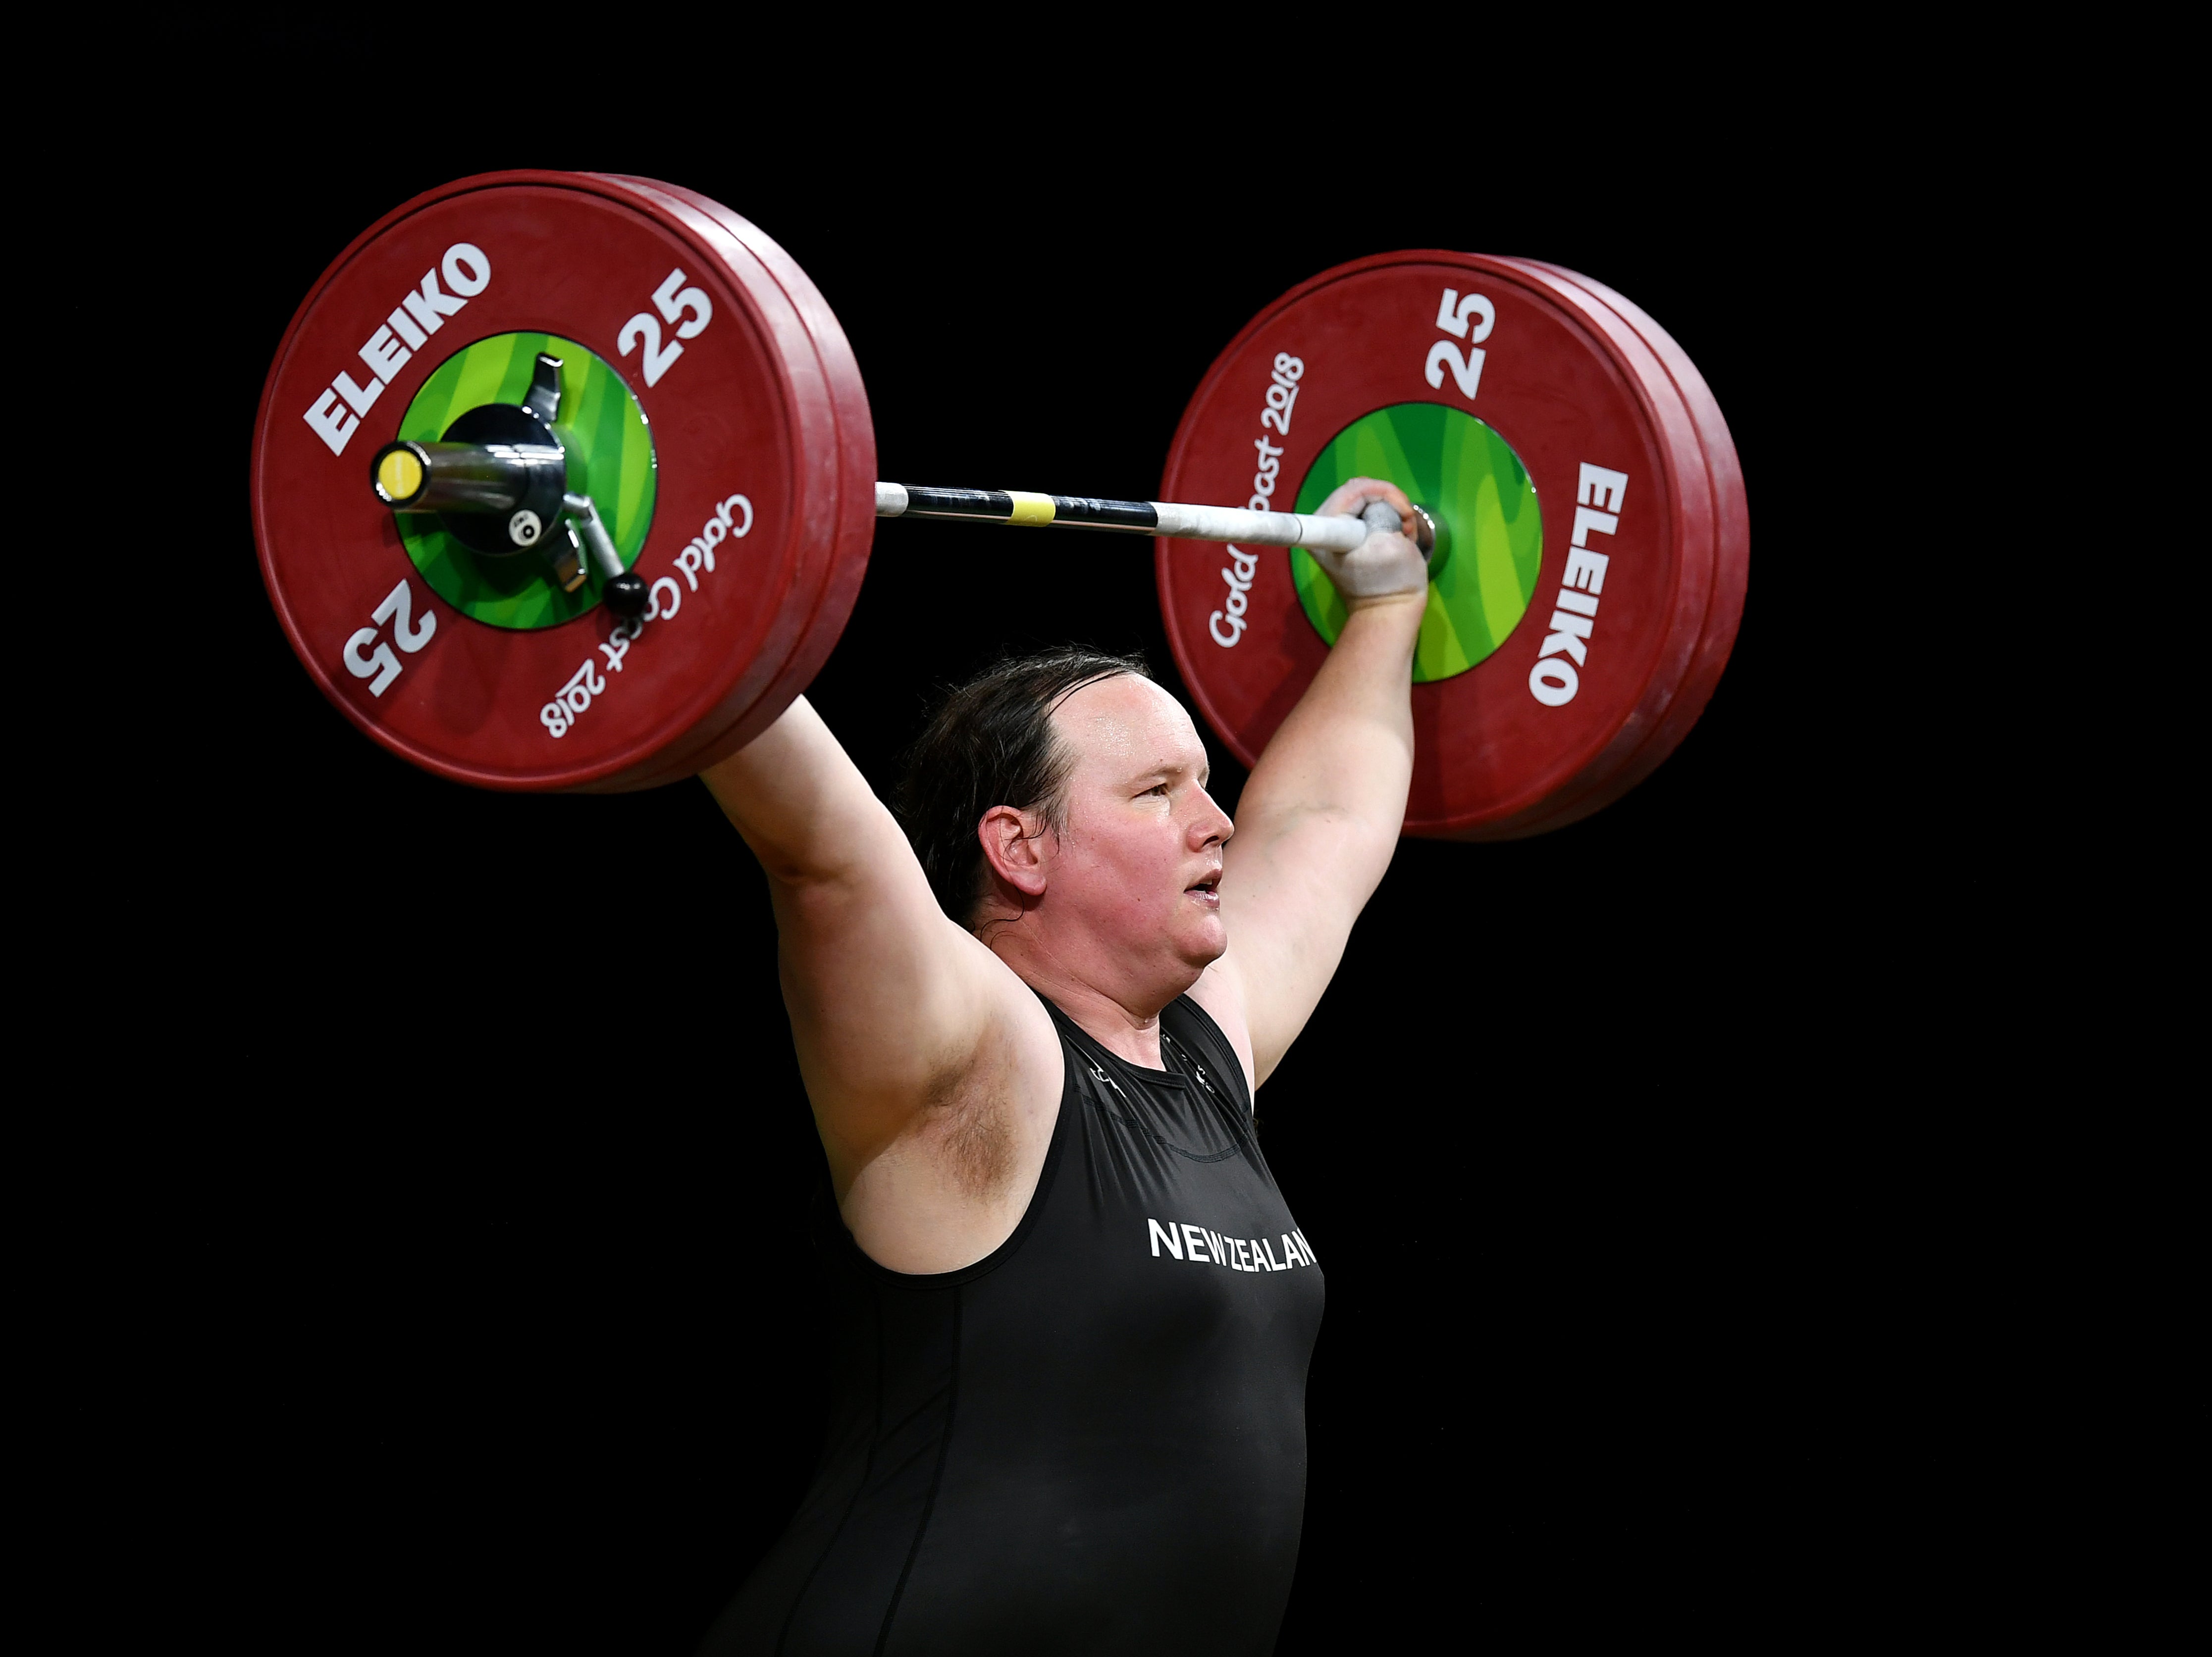 New Zealand weightlifter Laurel Hubbard